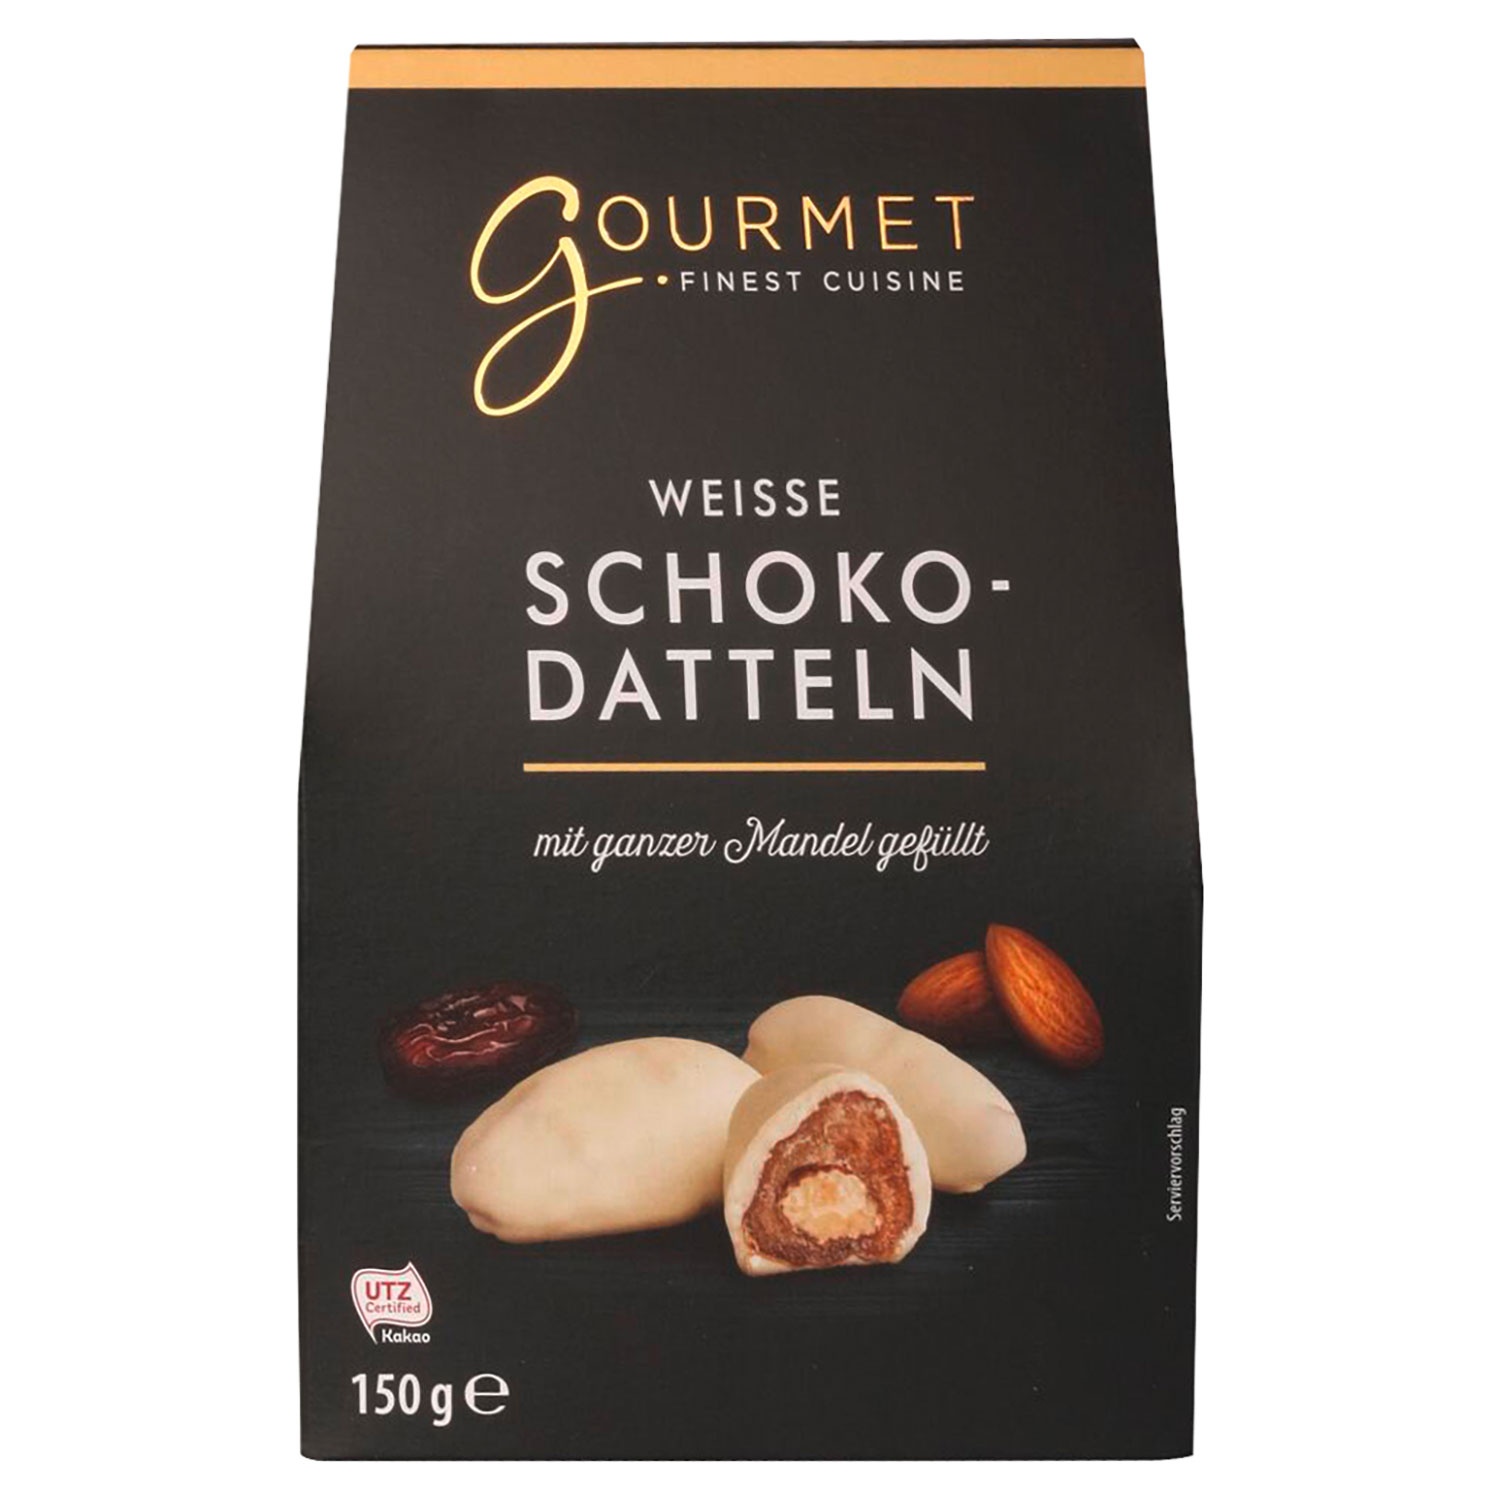 GOURMET FINEST CUISINE Schoko-Datteln 150 g